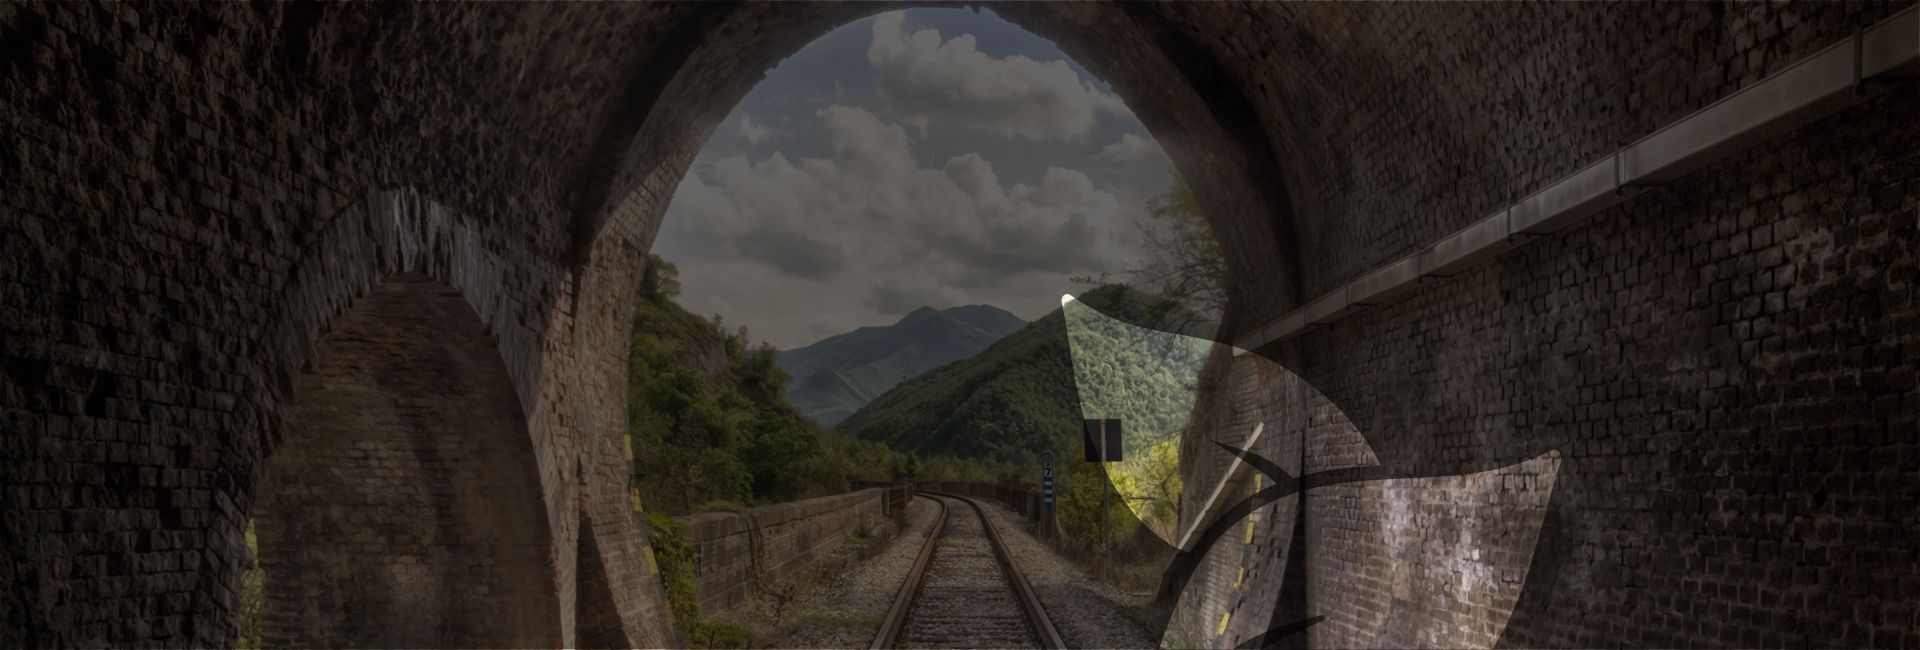 Pergola-Fabriano: an abandoned railway